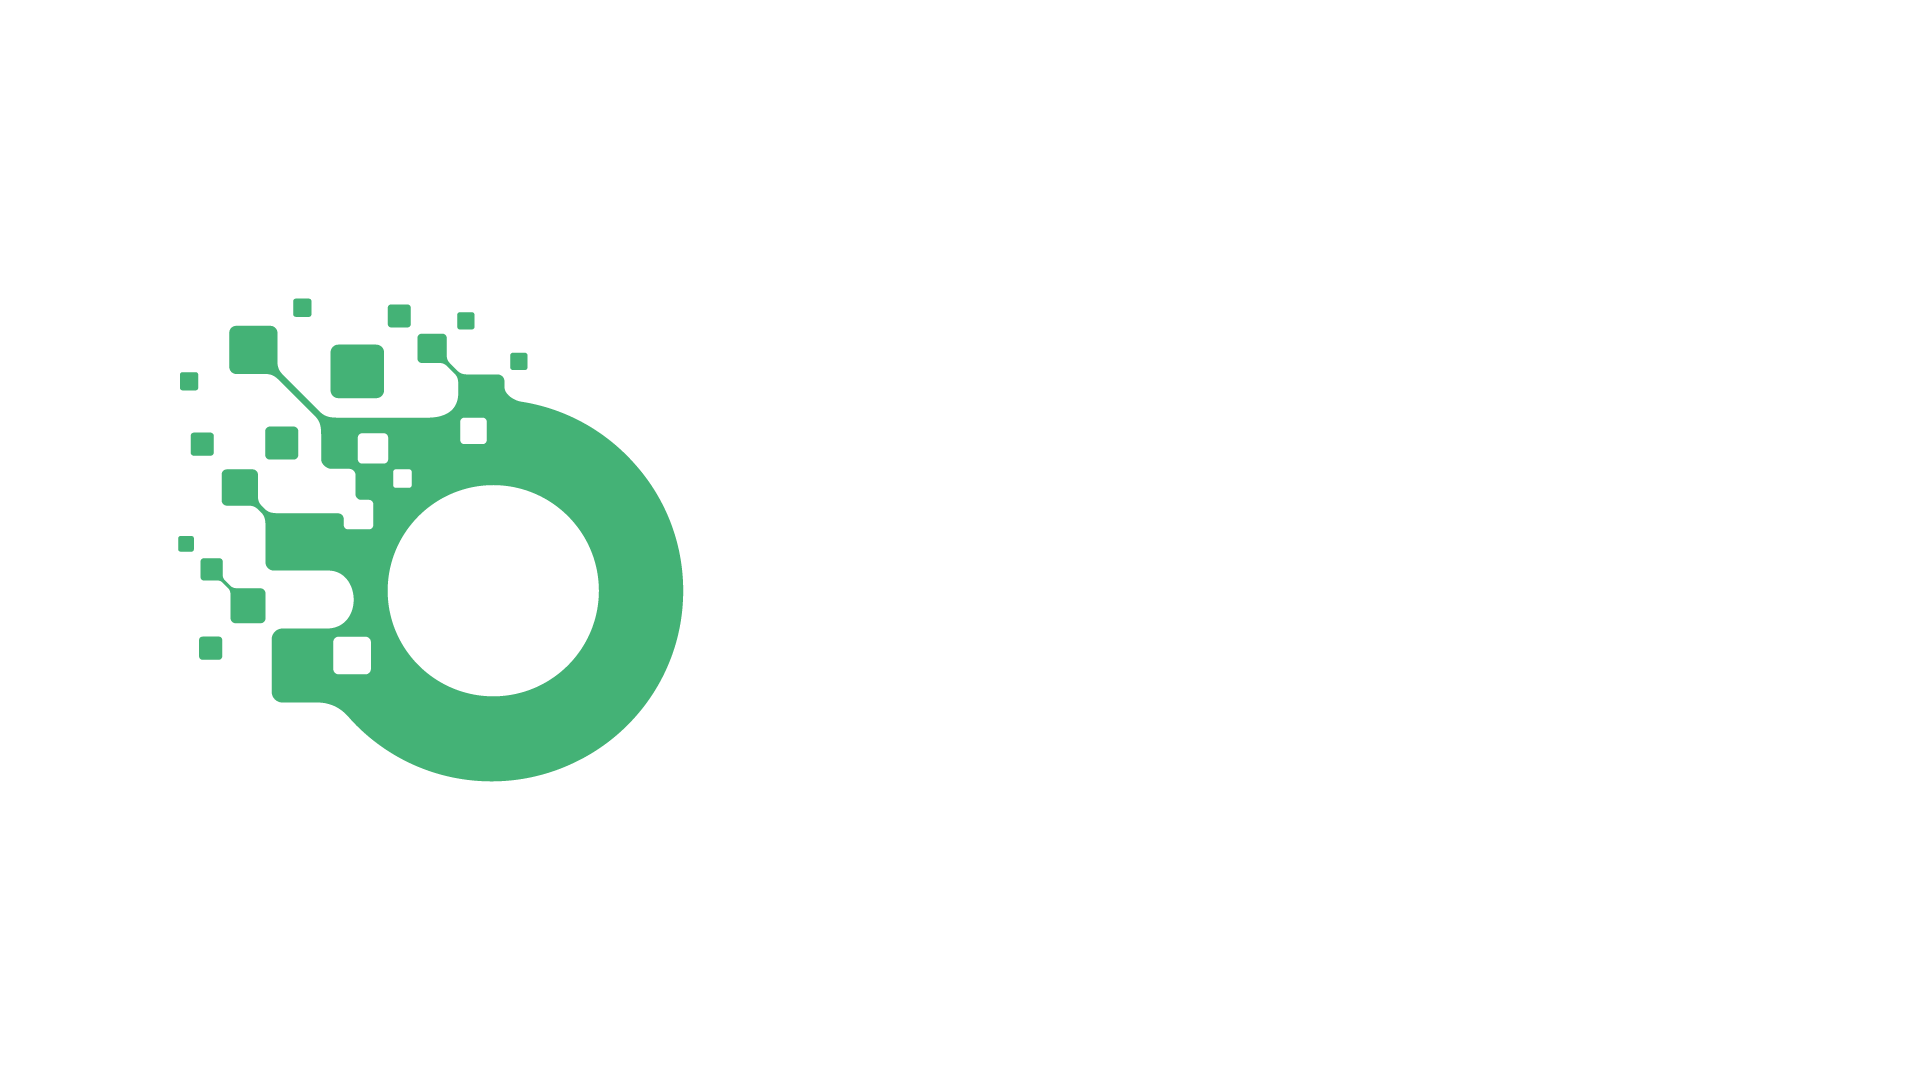 mein_studenckie_kola_naukowe_tworza_innowacje_logo.png